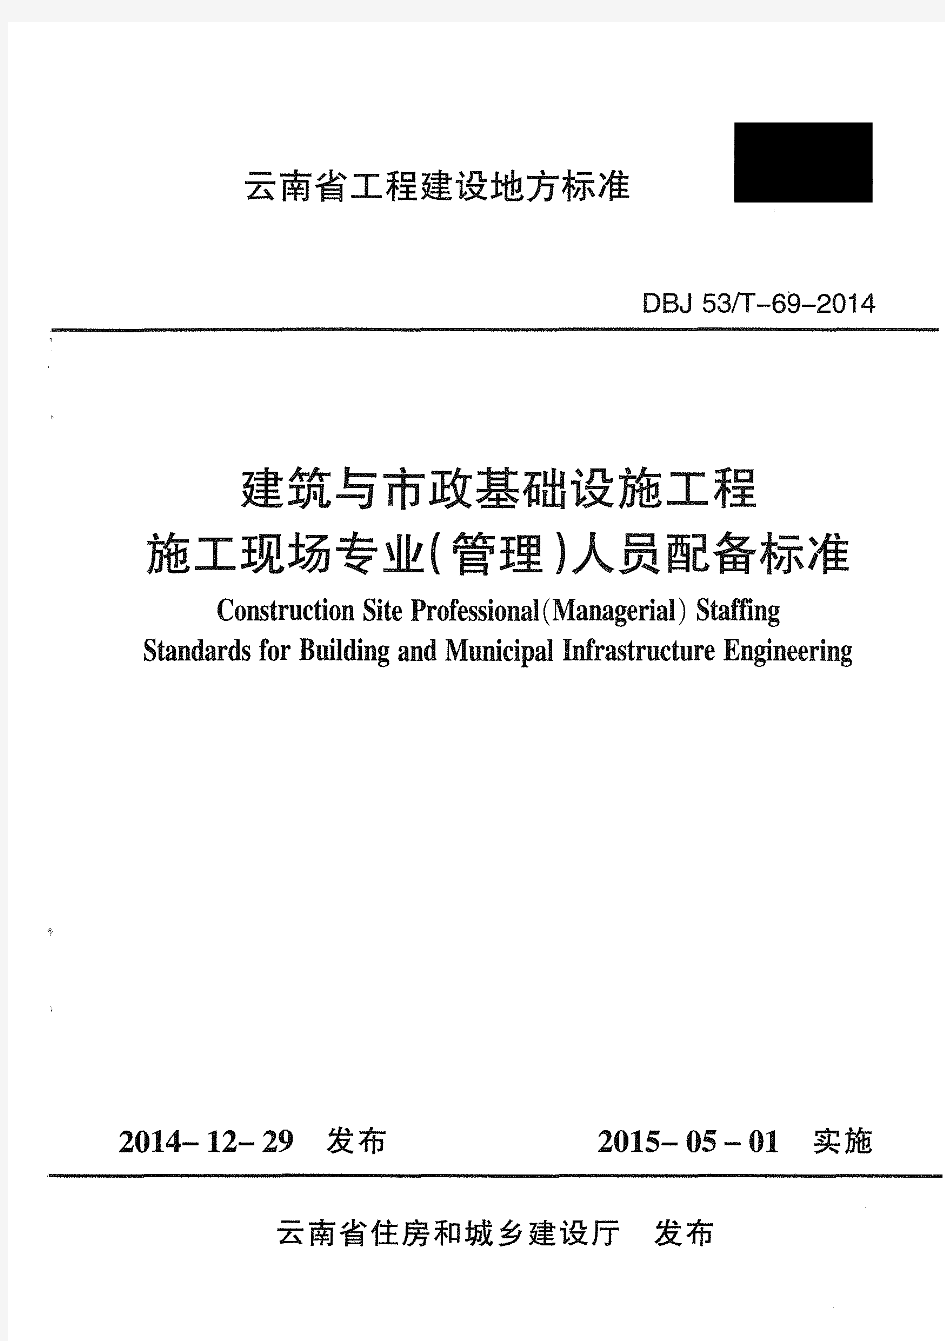 云建标[2014]678 号《云南省建筑与市政基础设施工程施工现场专业(管理)人员配备标准》